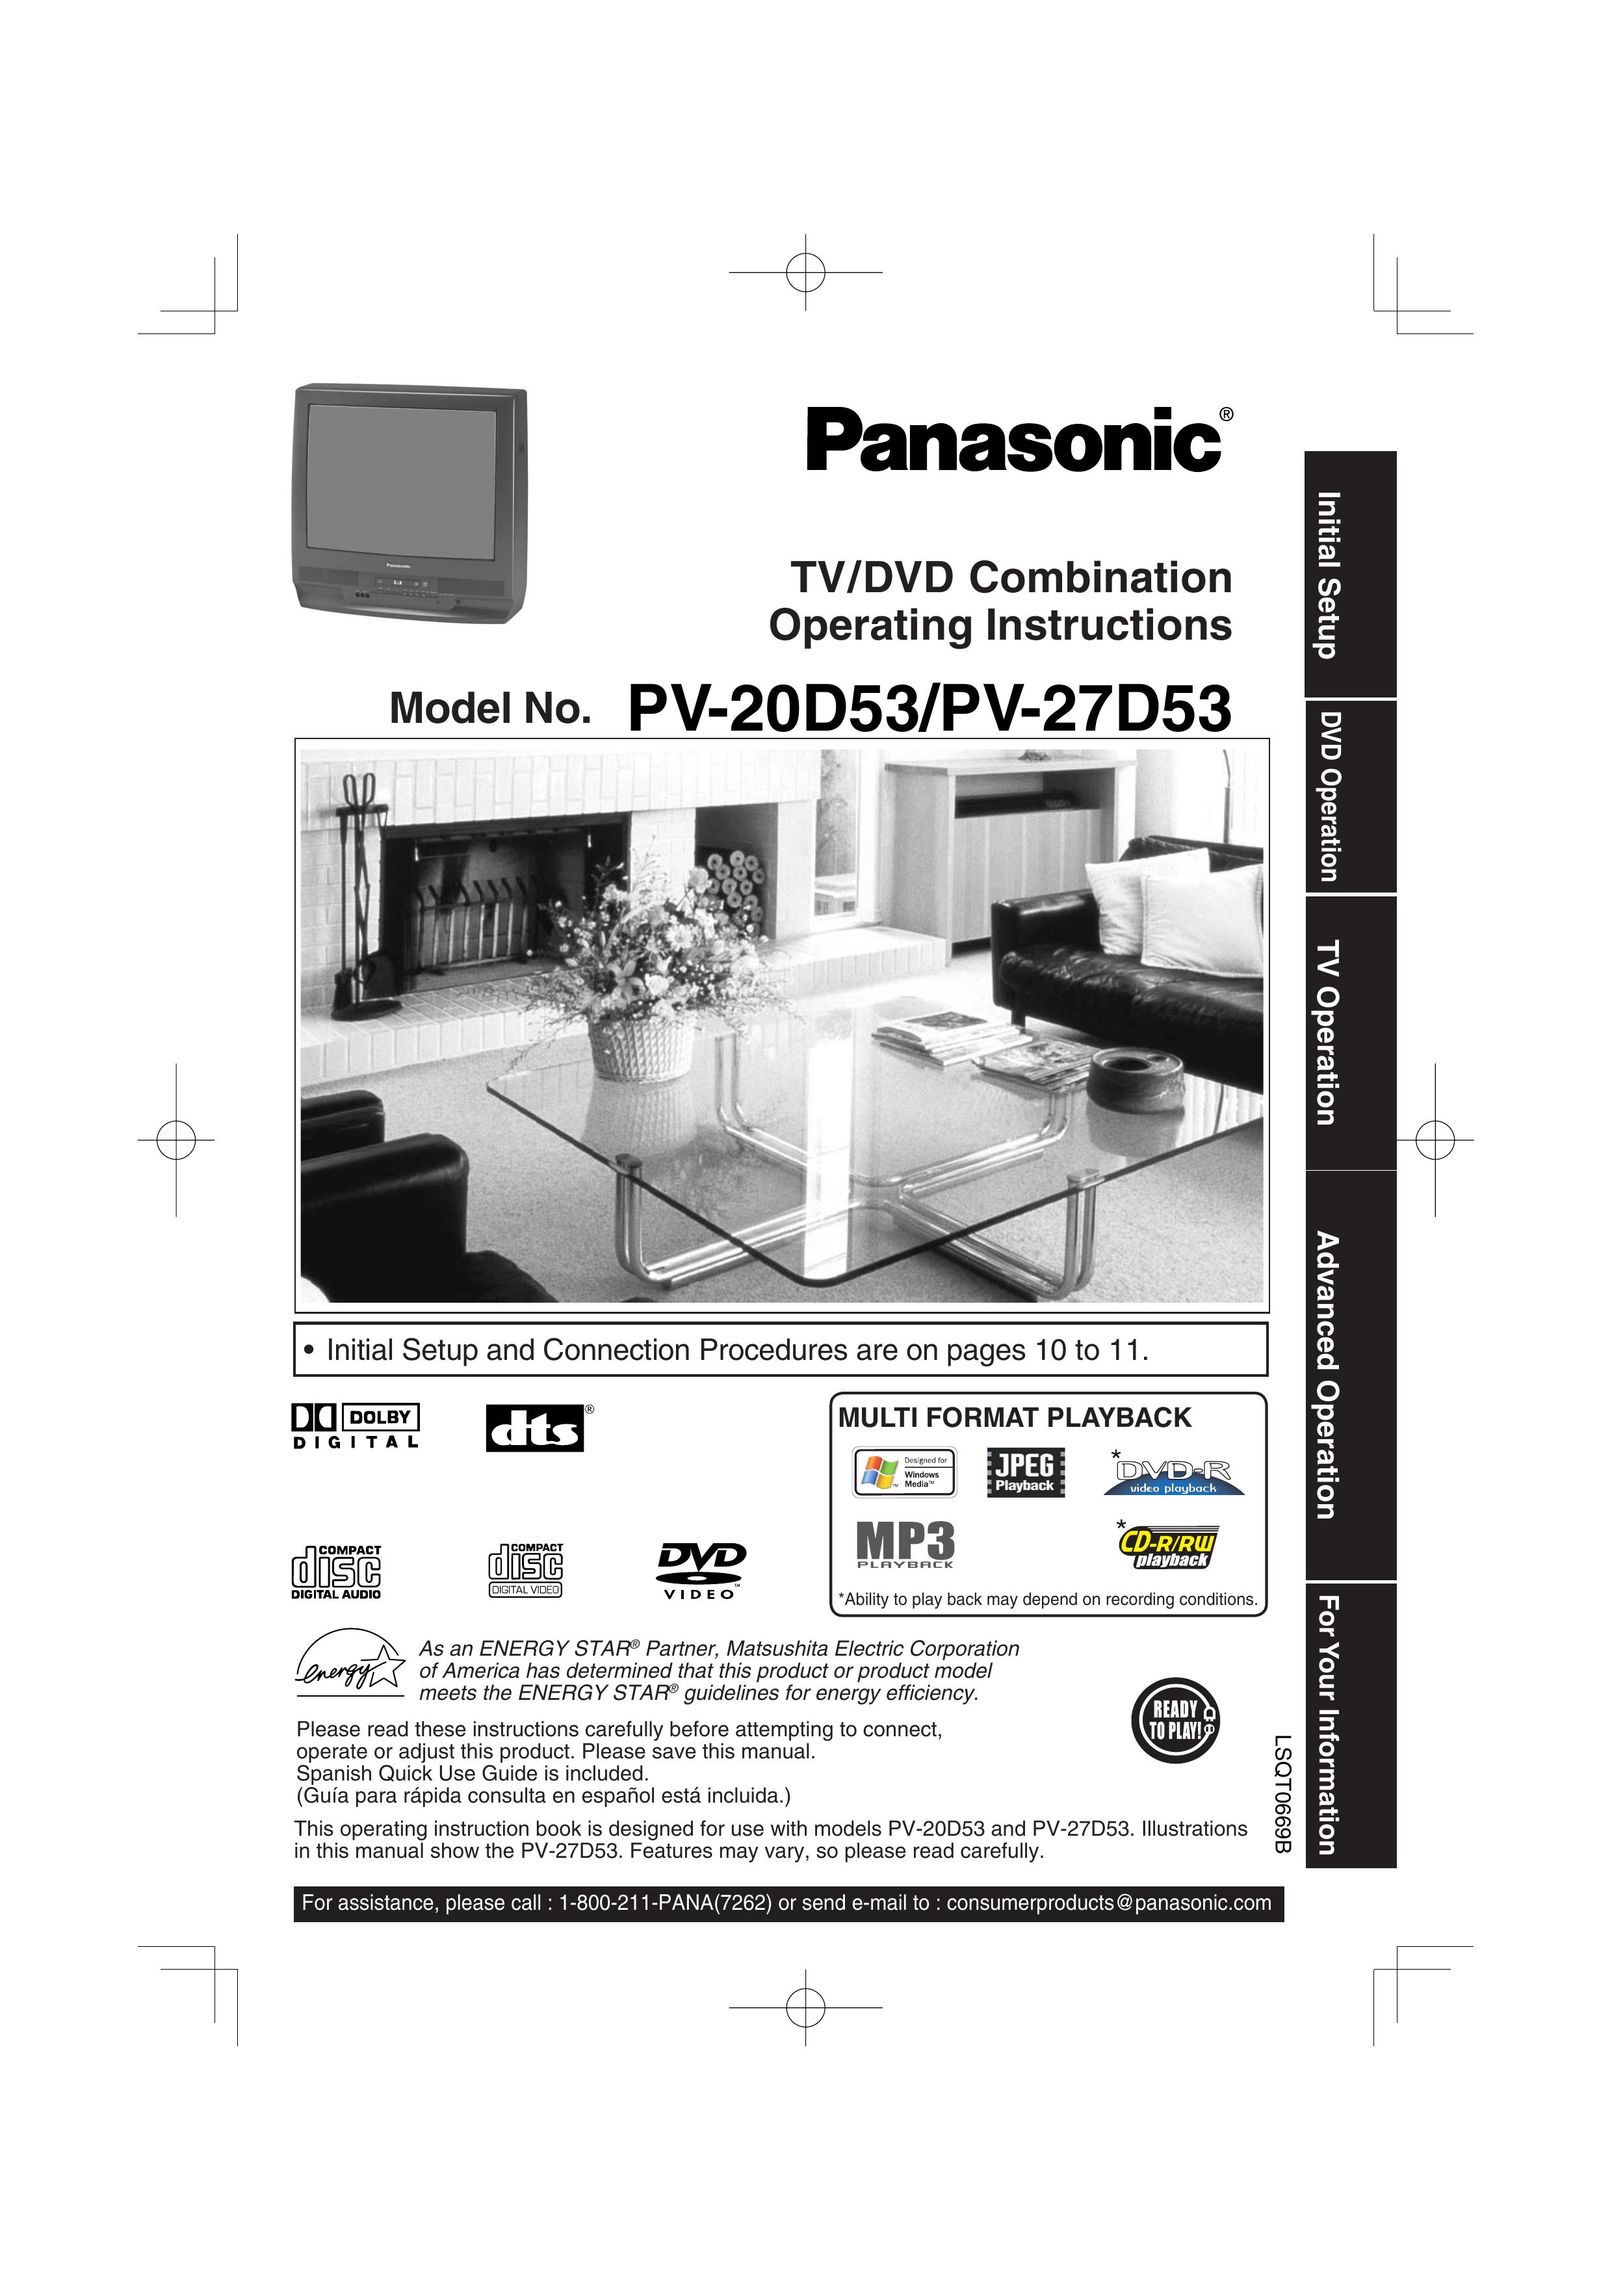 Panasonic PV 20D53 TV DVD Combo User Manual